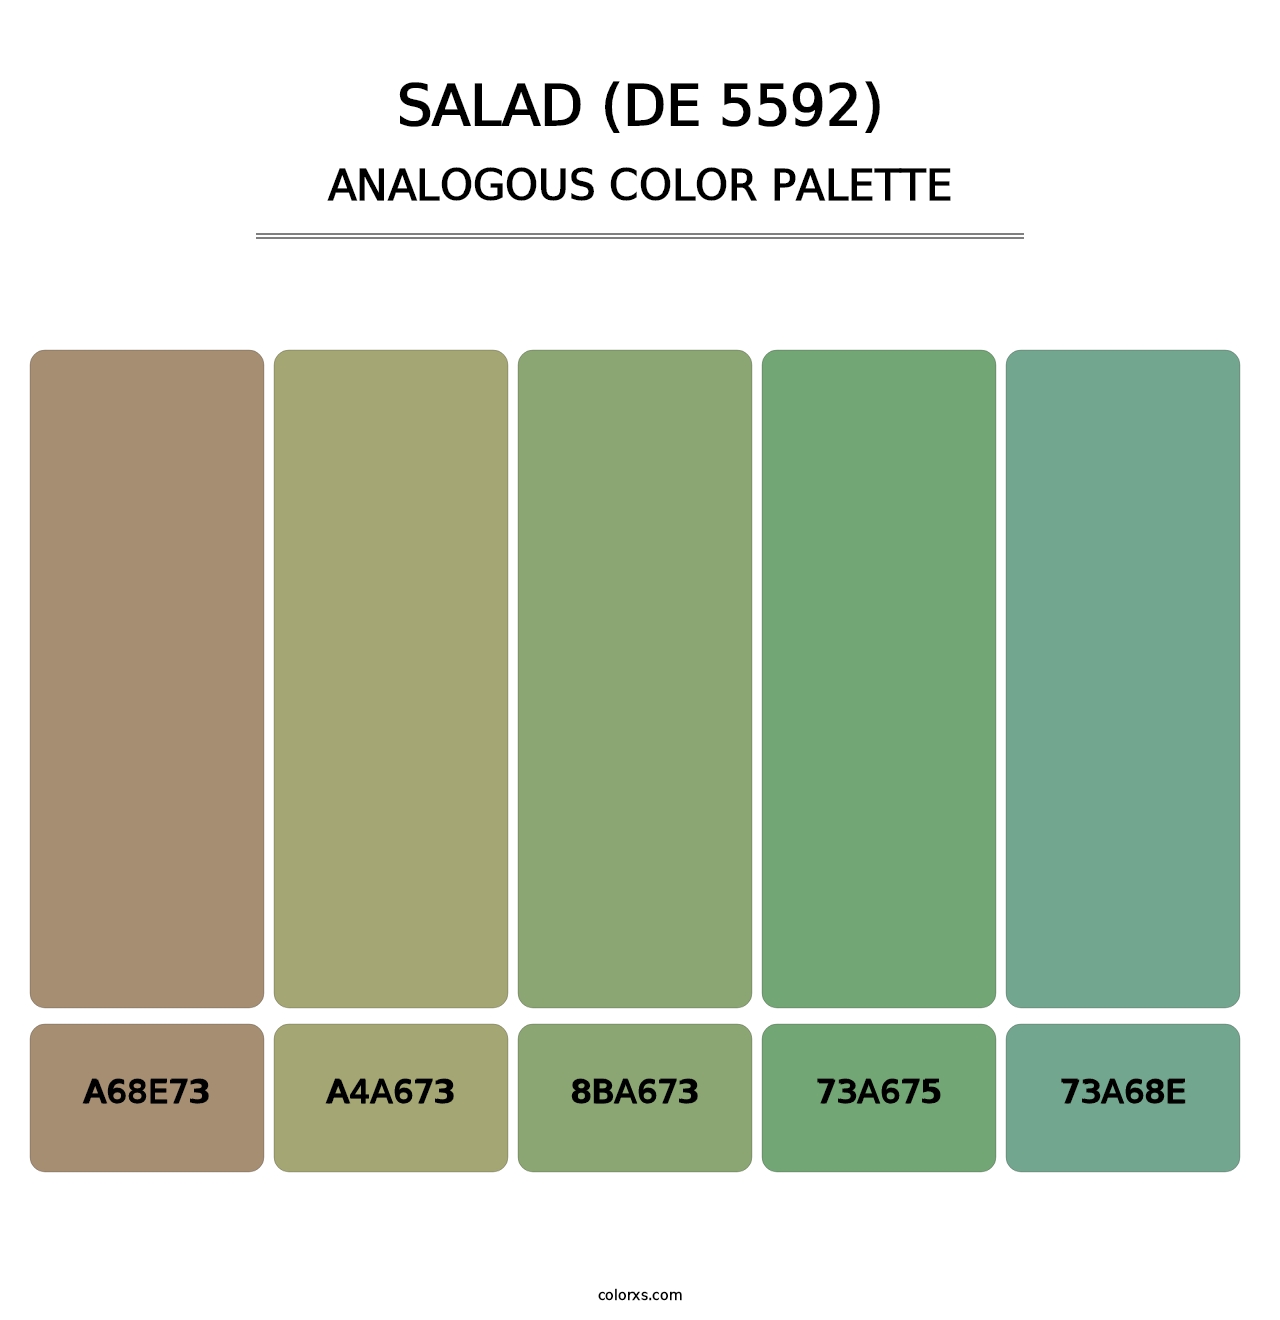 Salad (DE 5592) - Analogous Color Palette